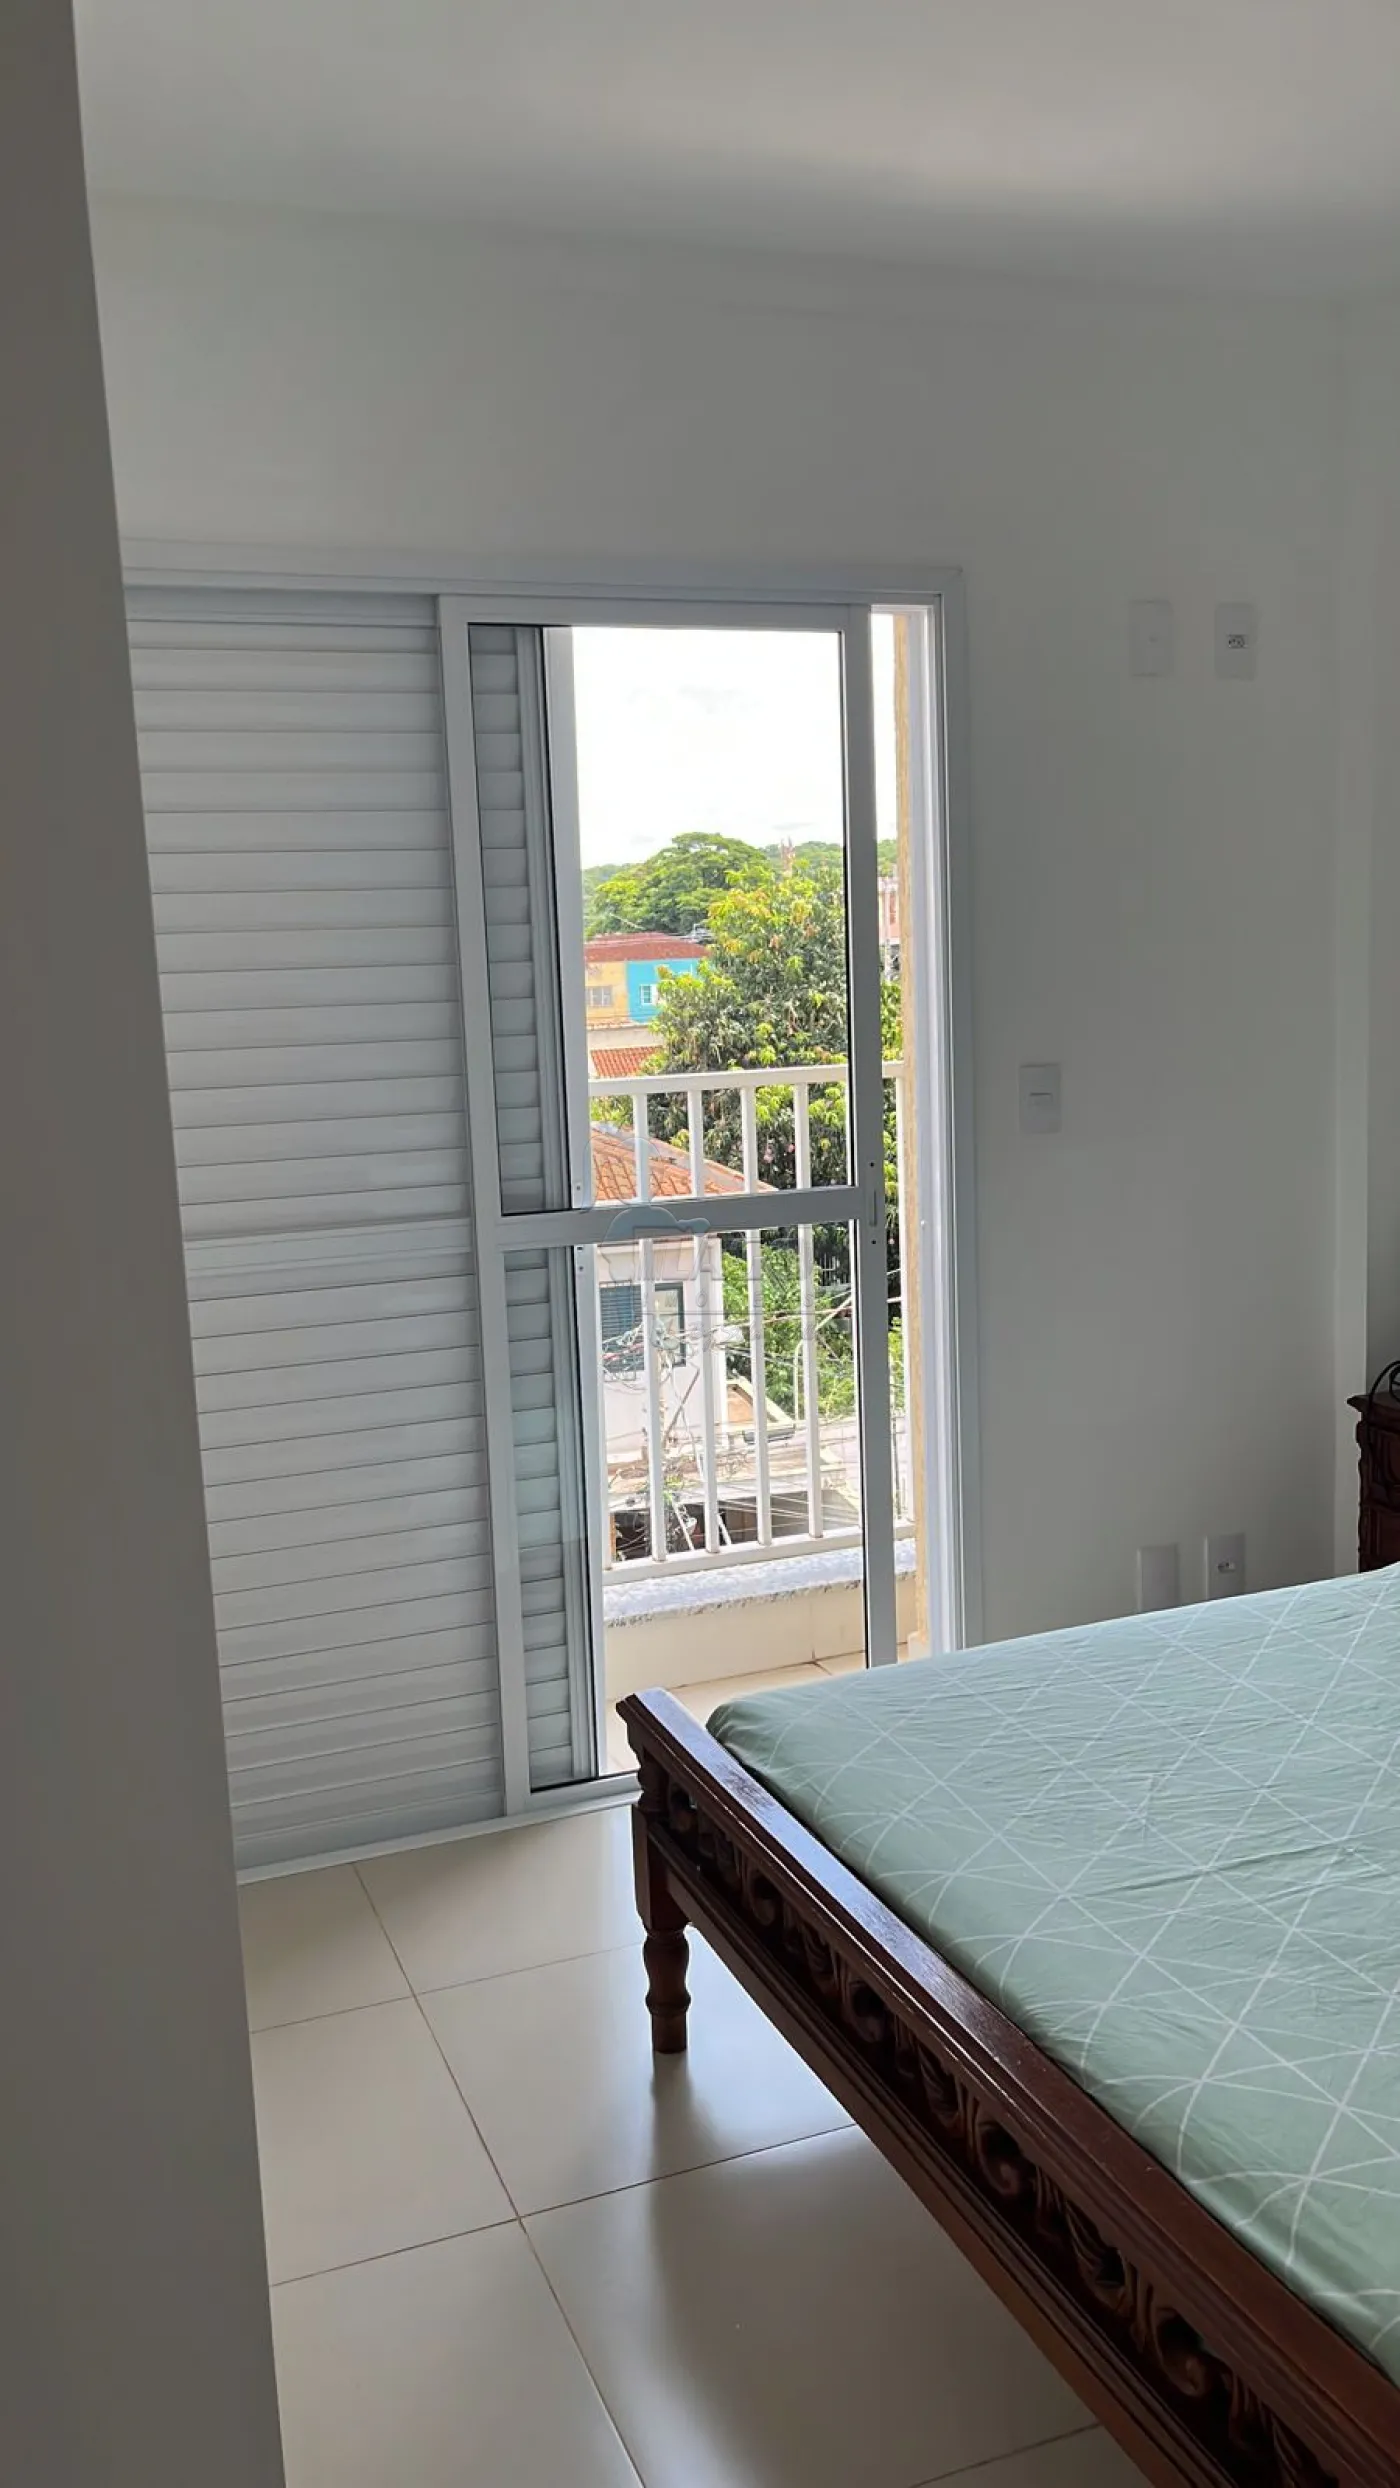 Comprar Apartamentos / Padrão em Ribeirão Preto R$ 390.000,00 - Foto 5